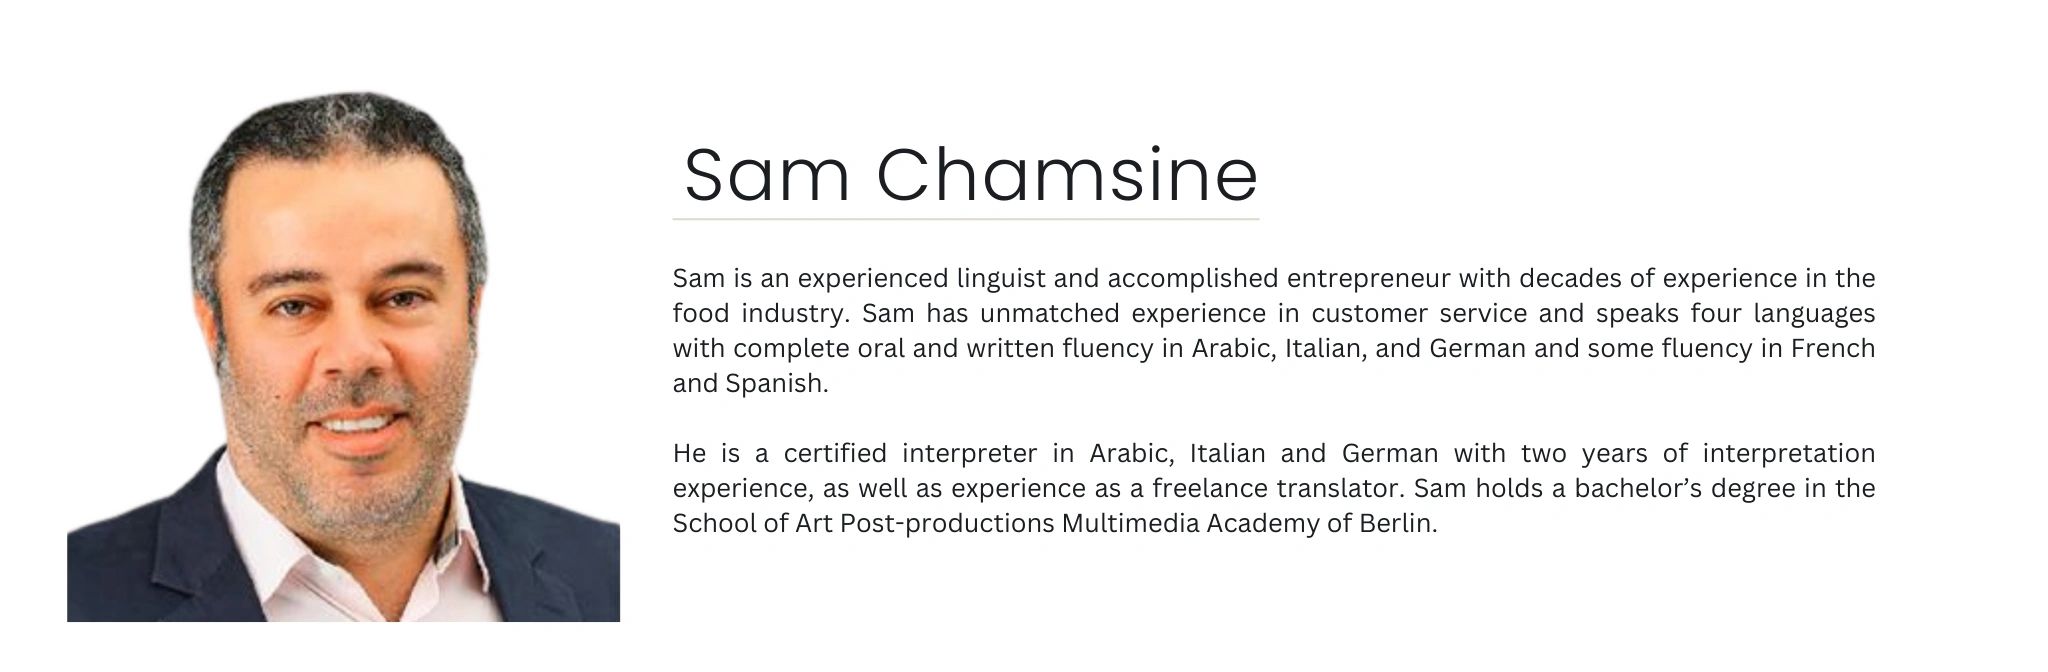 Sam Chamsine